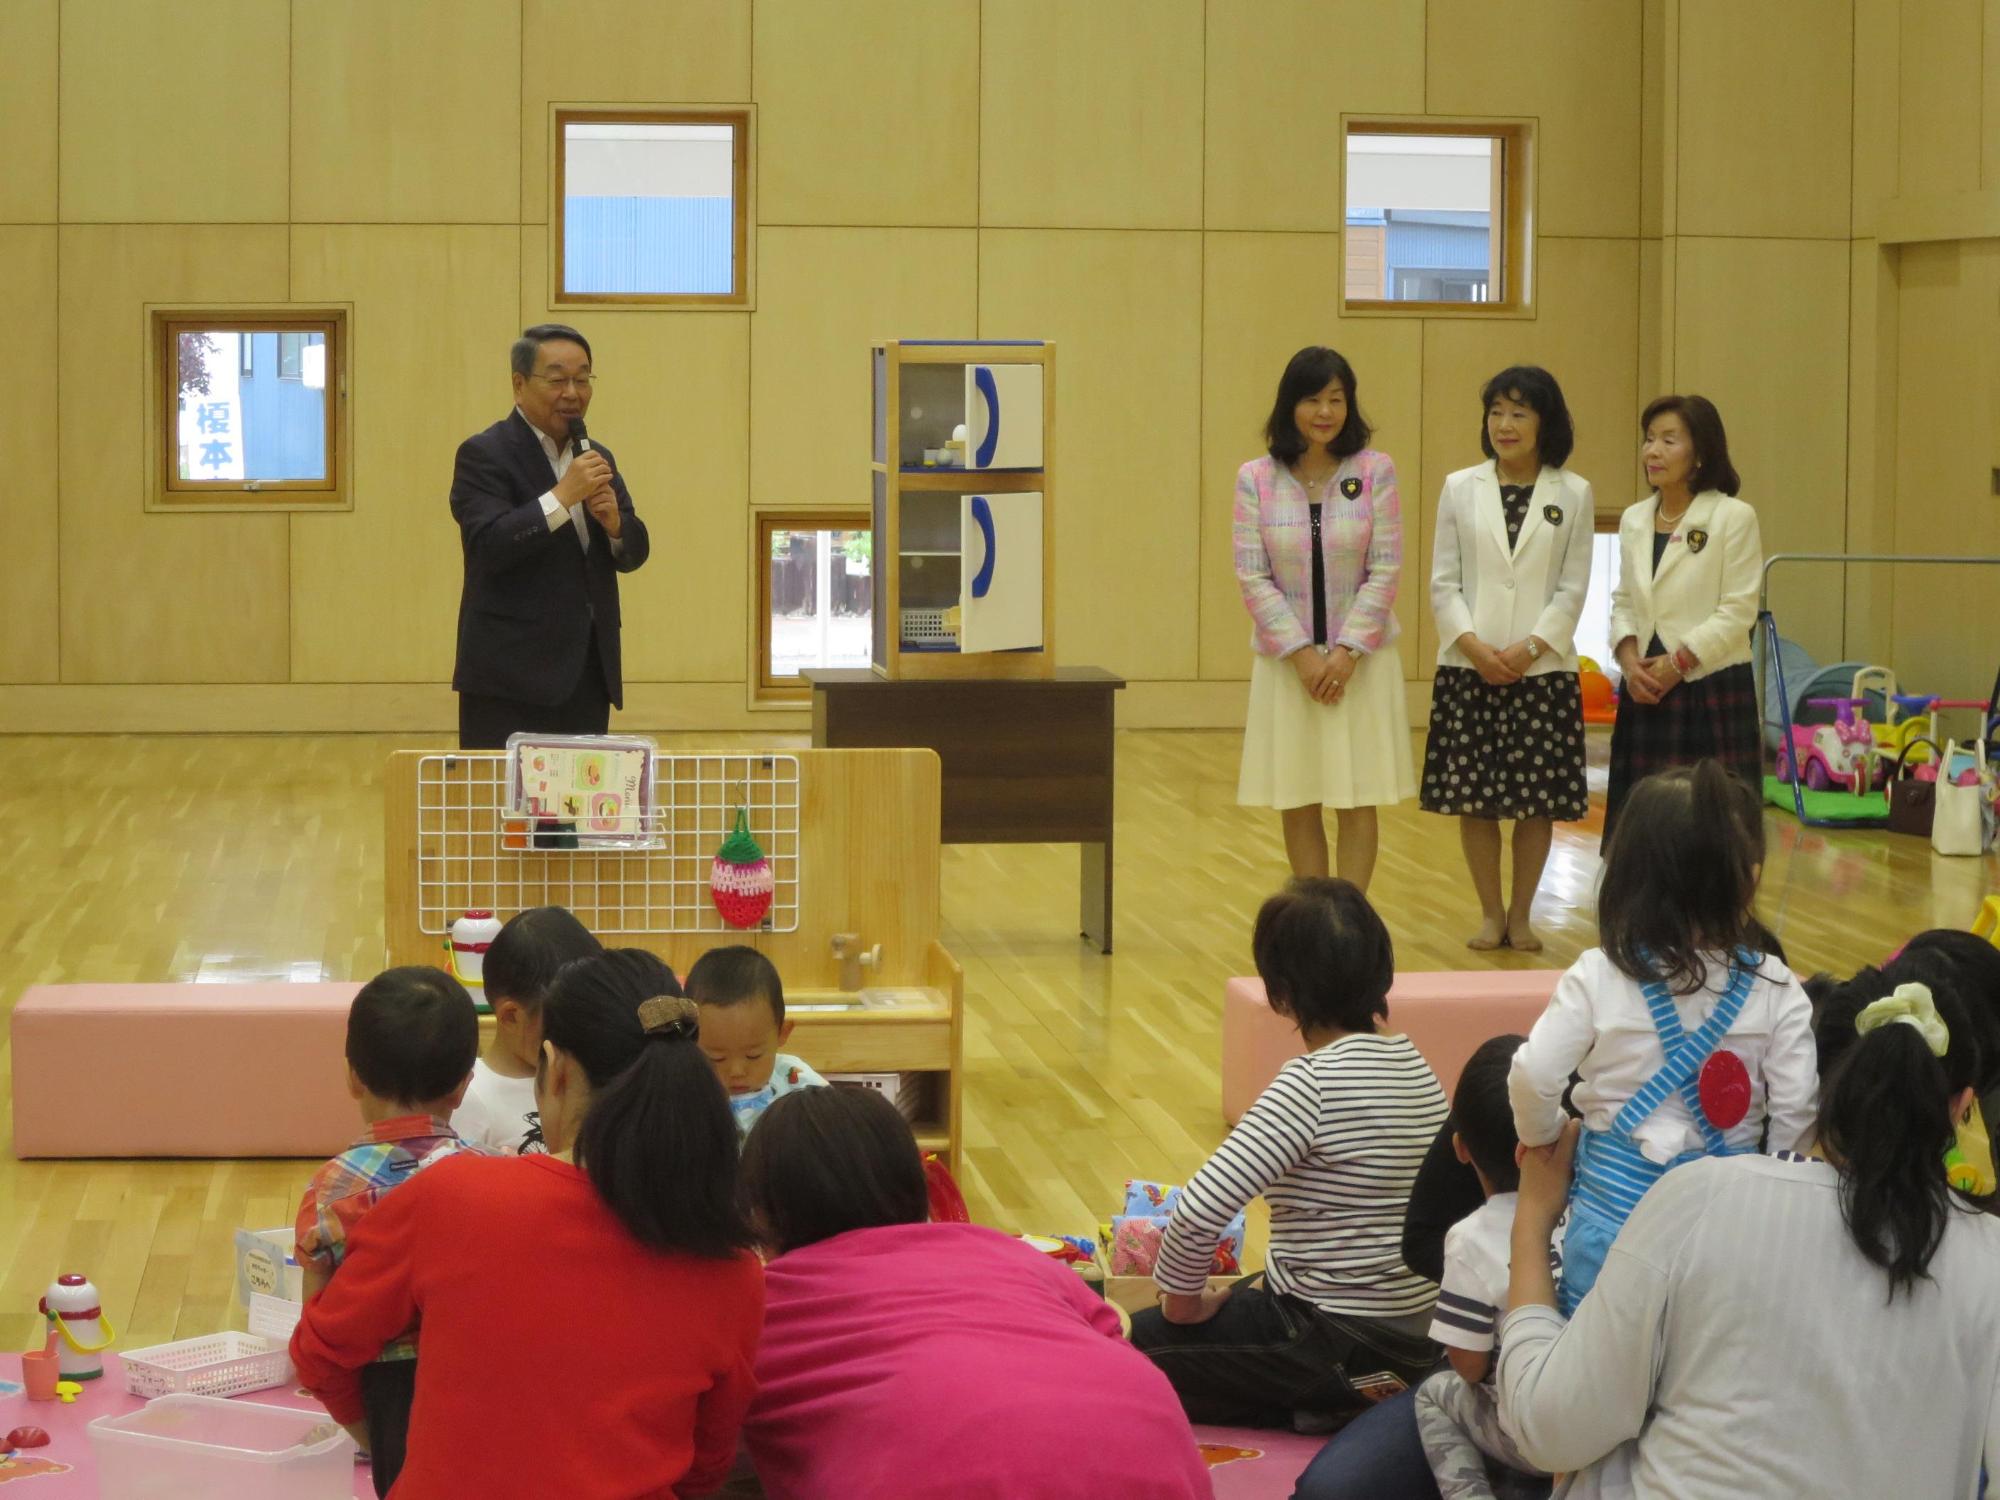 「国際ソロプチミスト恵庭による遊具の贈呈式」にて挨拶をしている原田市長の写真